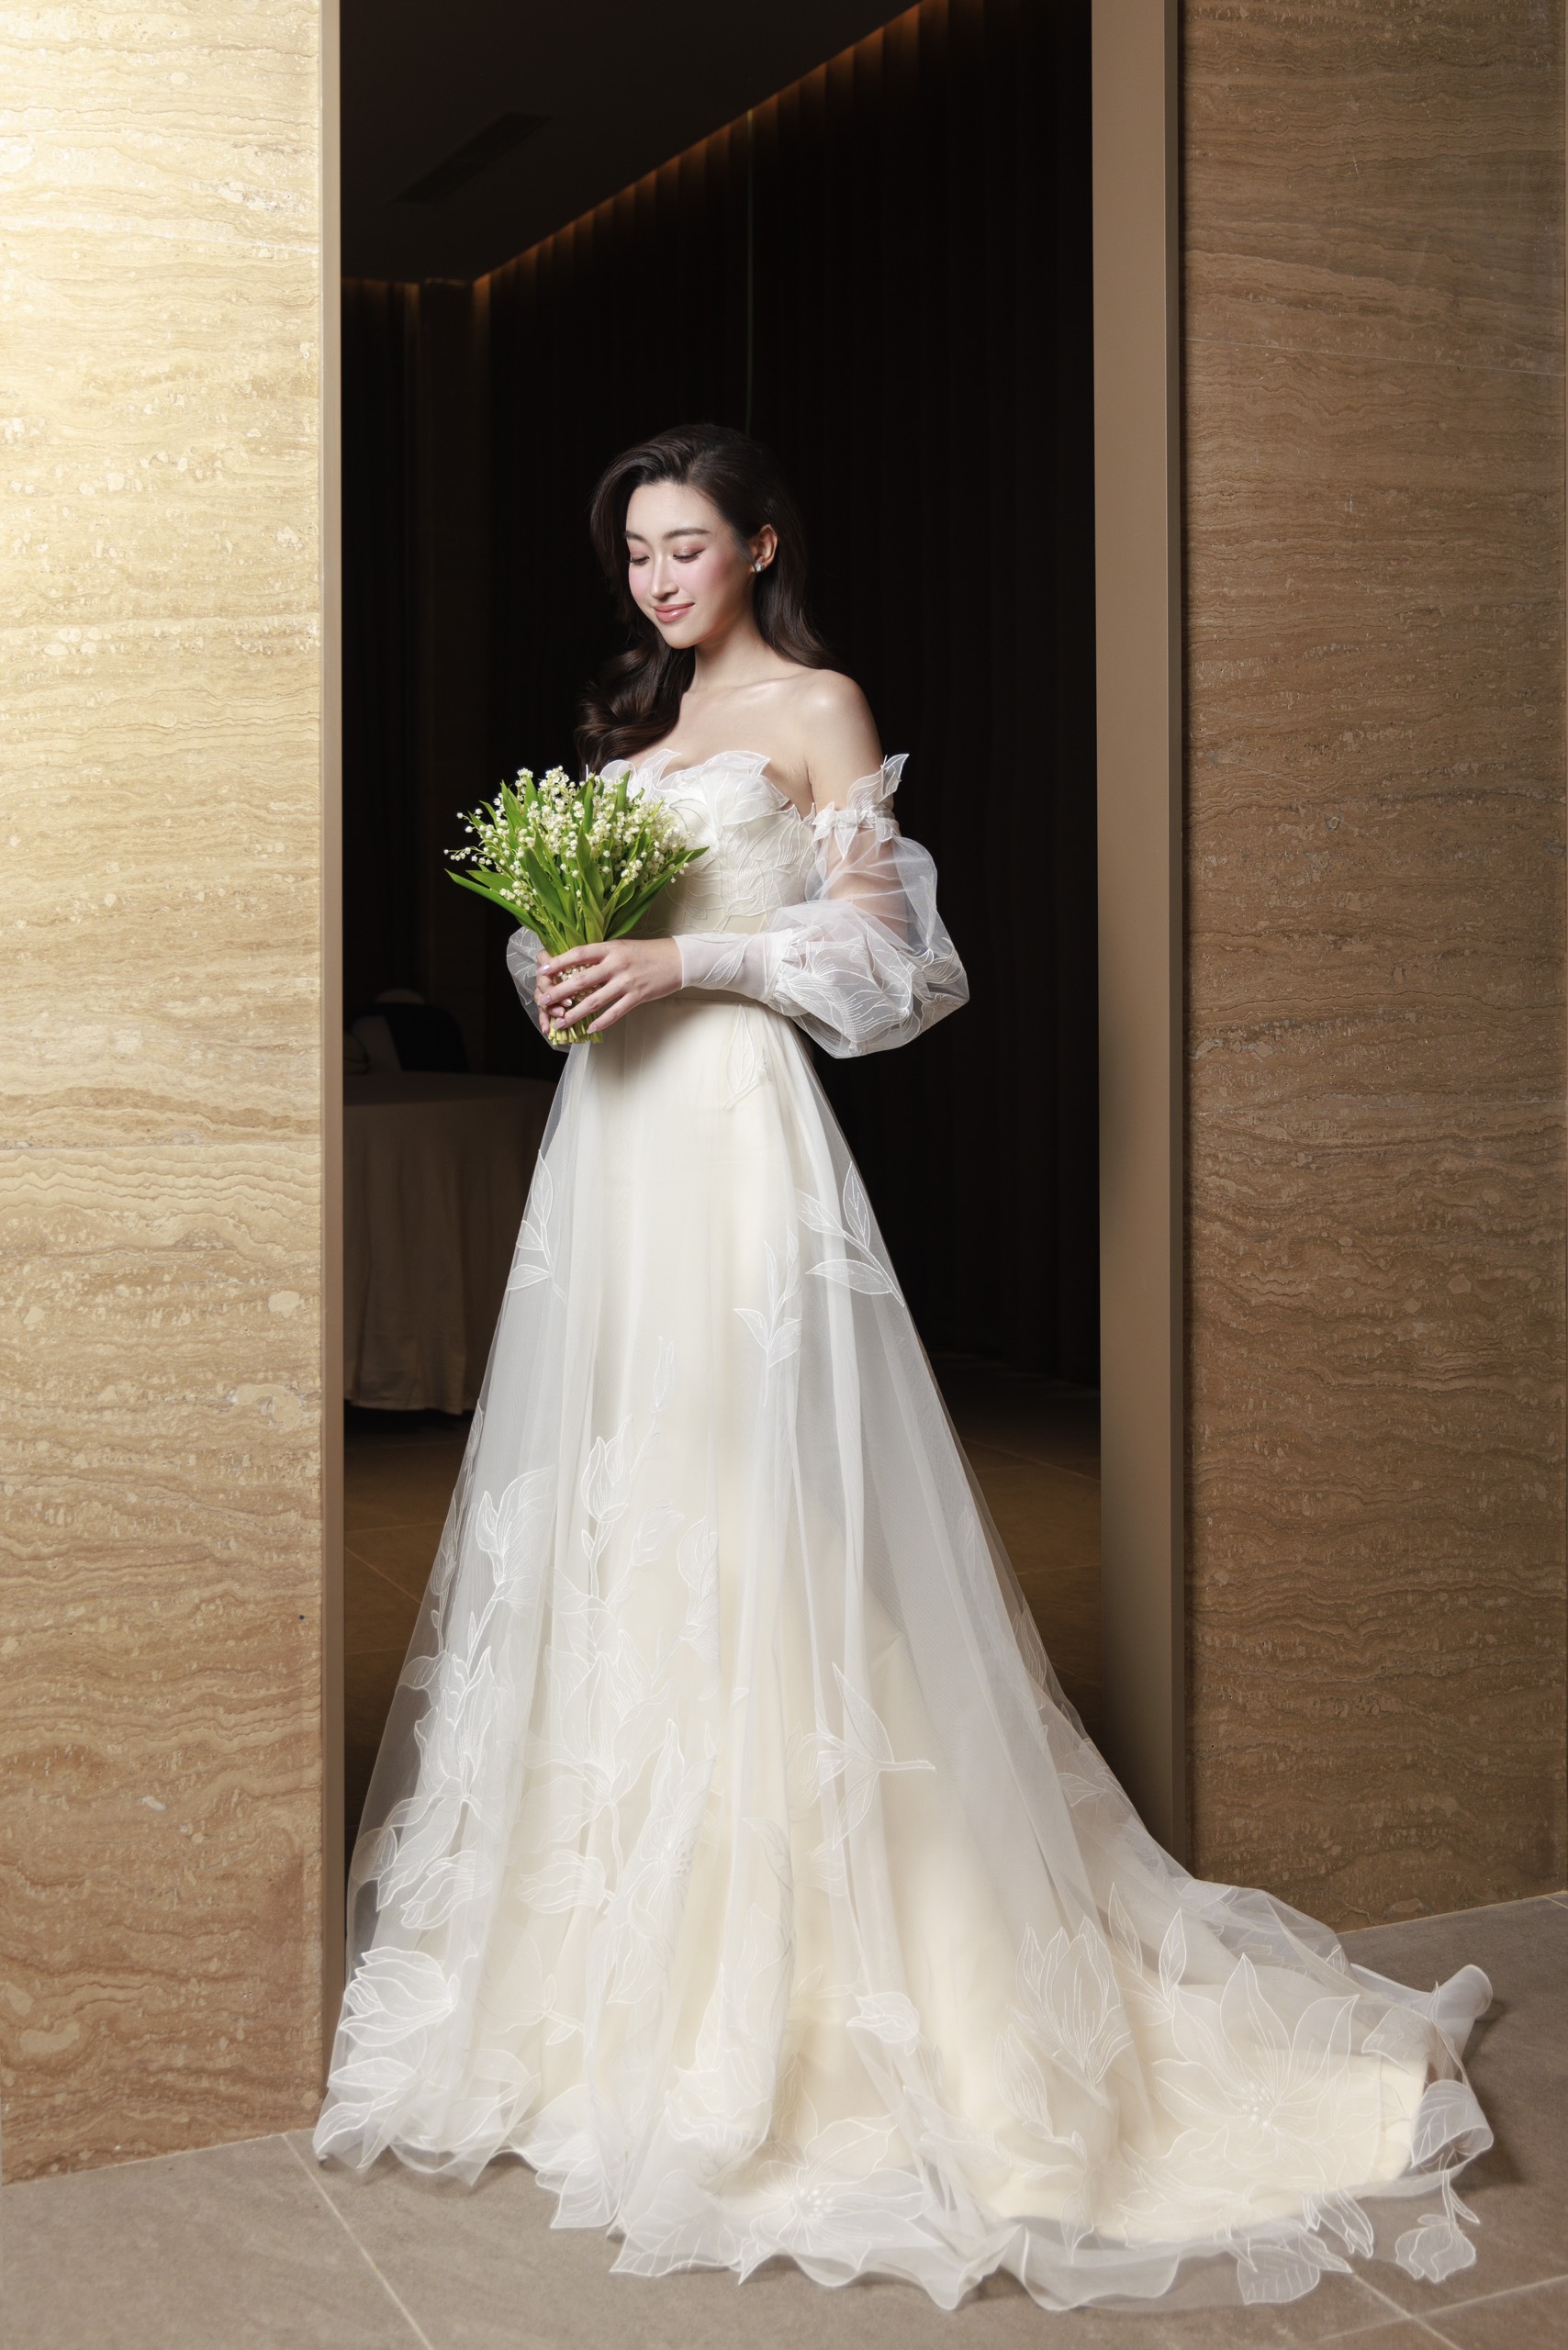 Hoa hậu Đỗ Mỹ Linh trở thành biểu tượng cô dâu thời đại mới với những tuyệt tác váy cưới từ NTK Phương Linh - Ảnh 3.